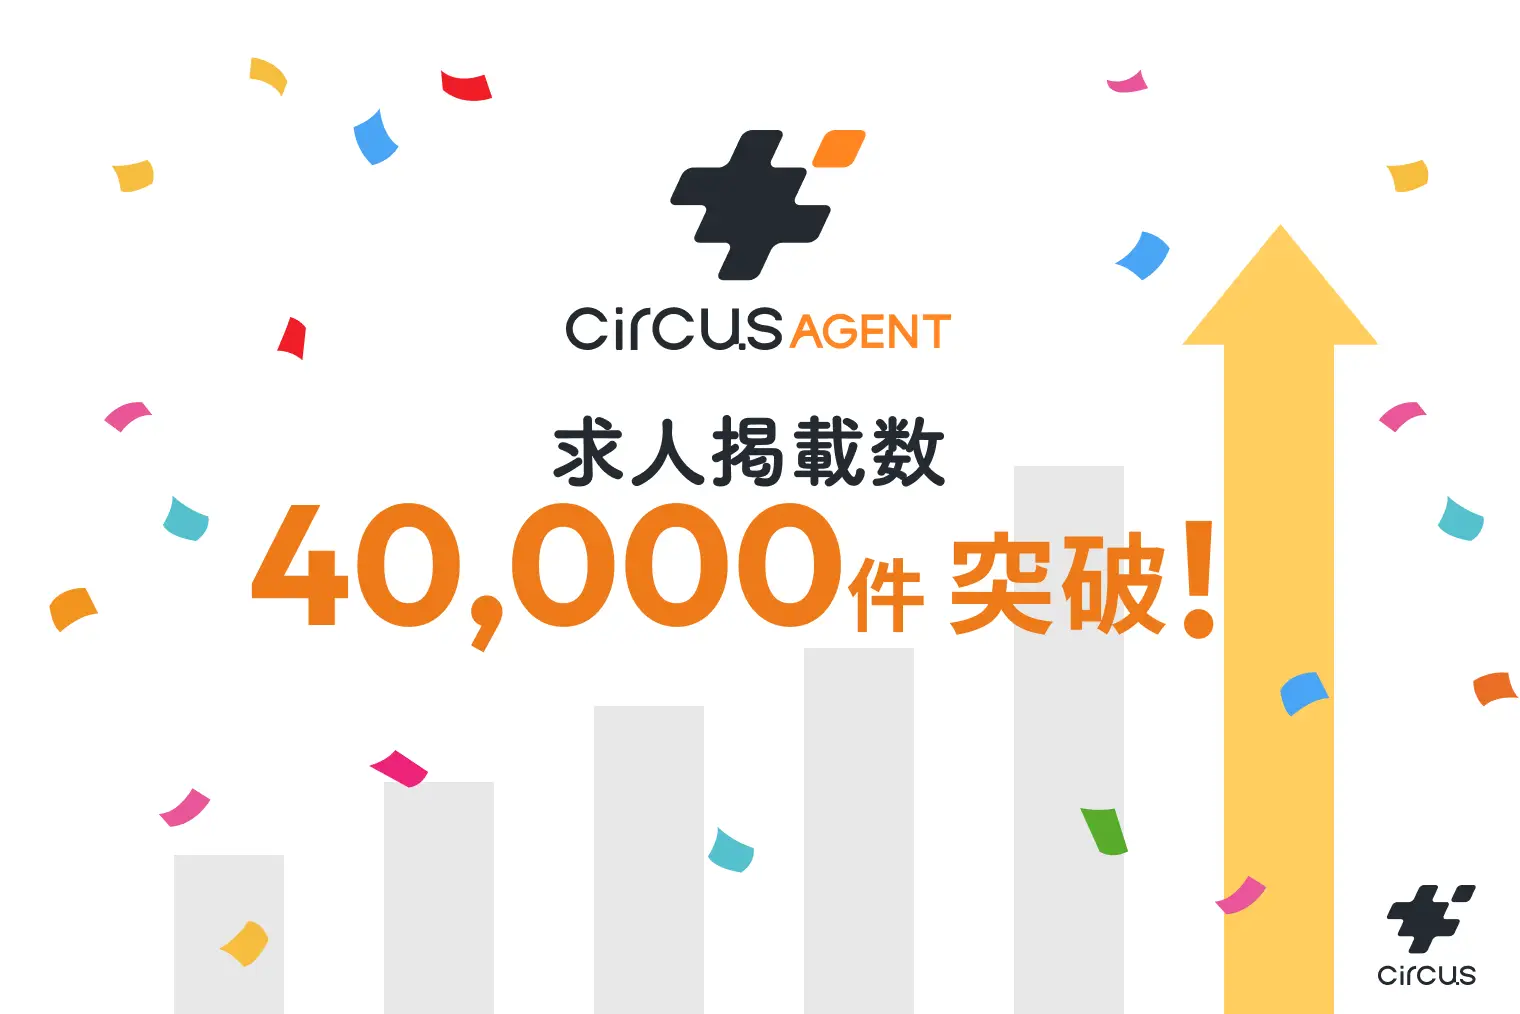 人材紹介プラットフォーム「circus AGENT」の掲載求人数が40,000件を突破